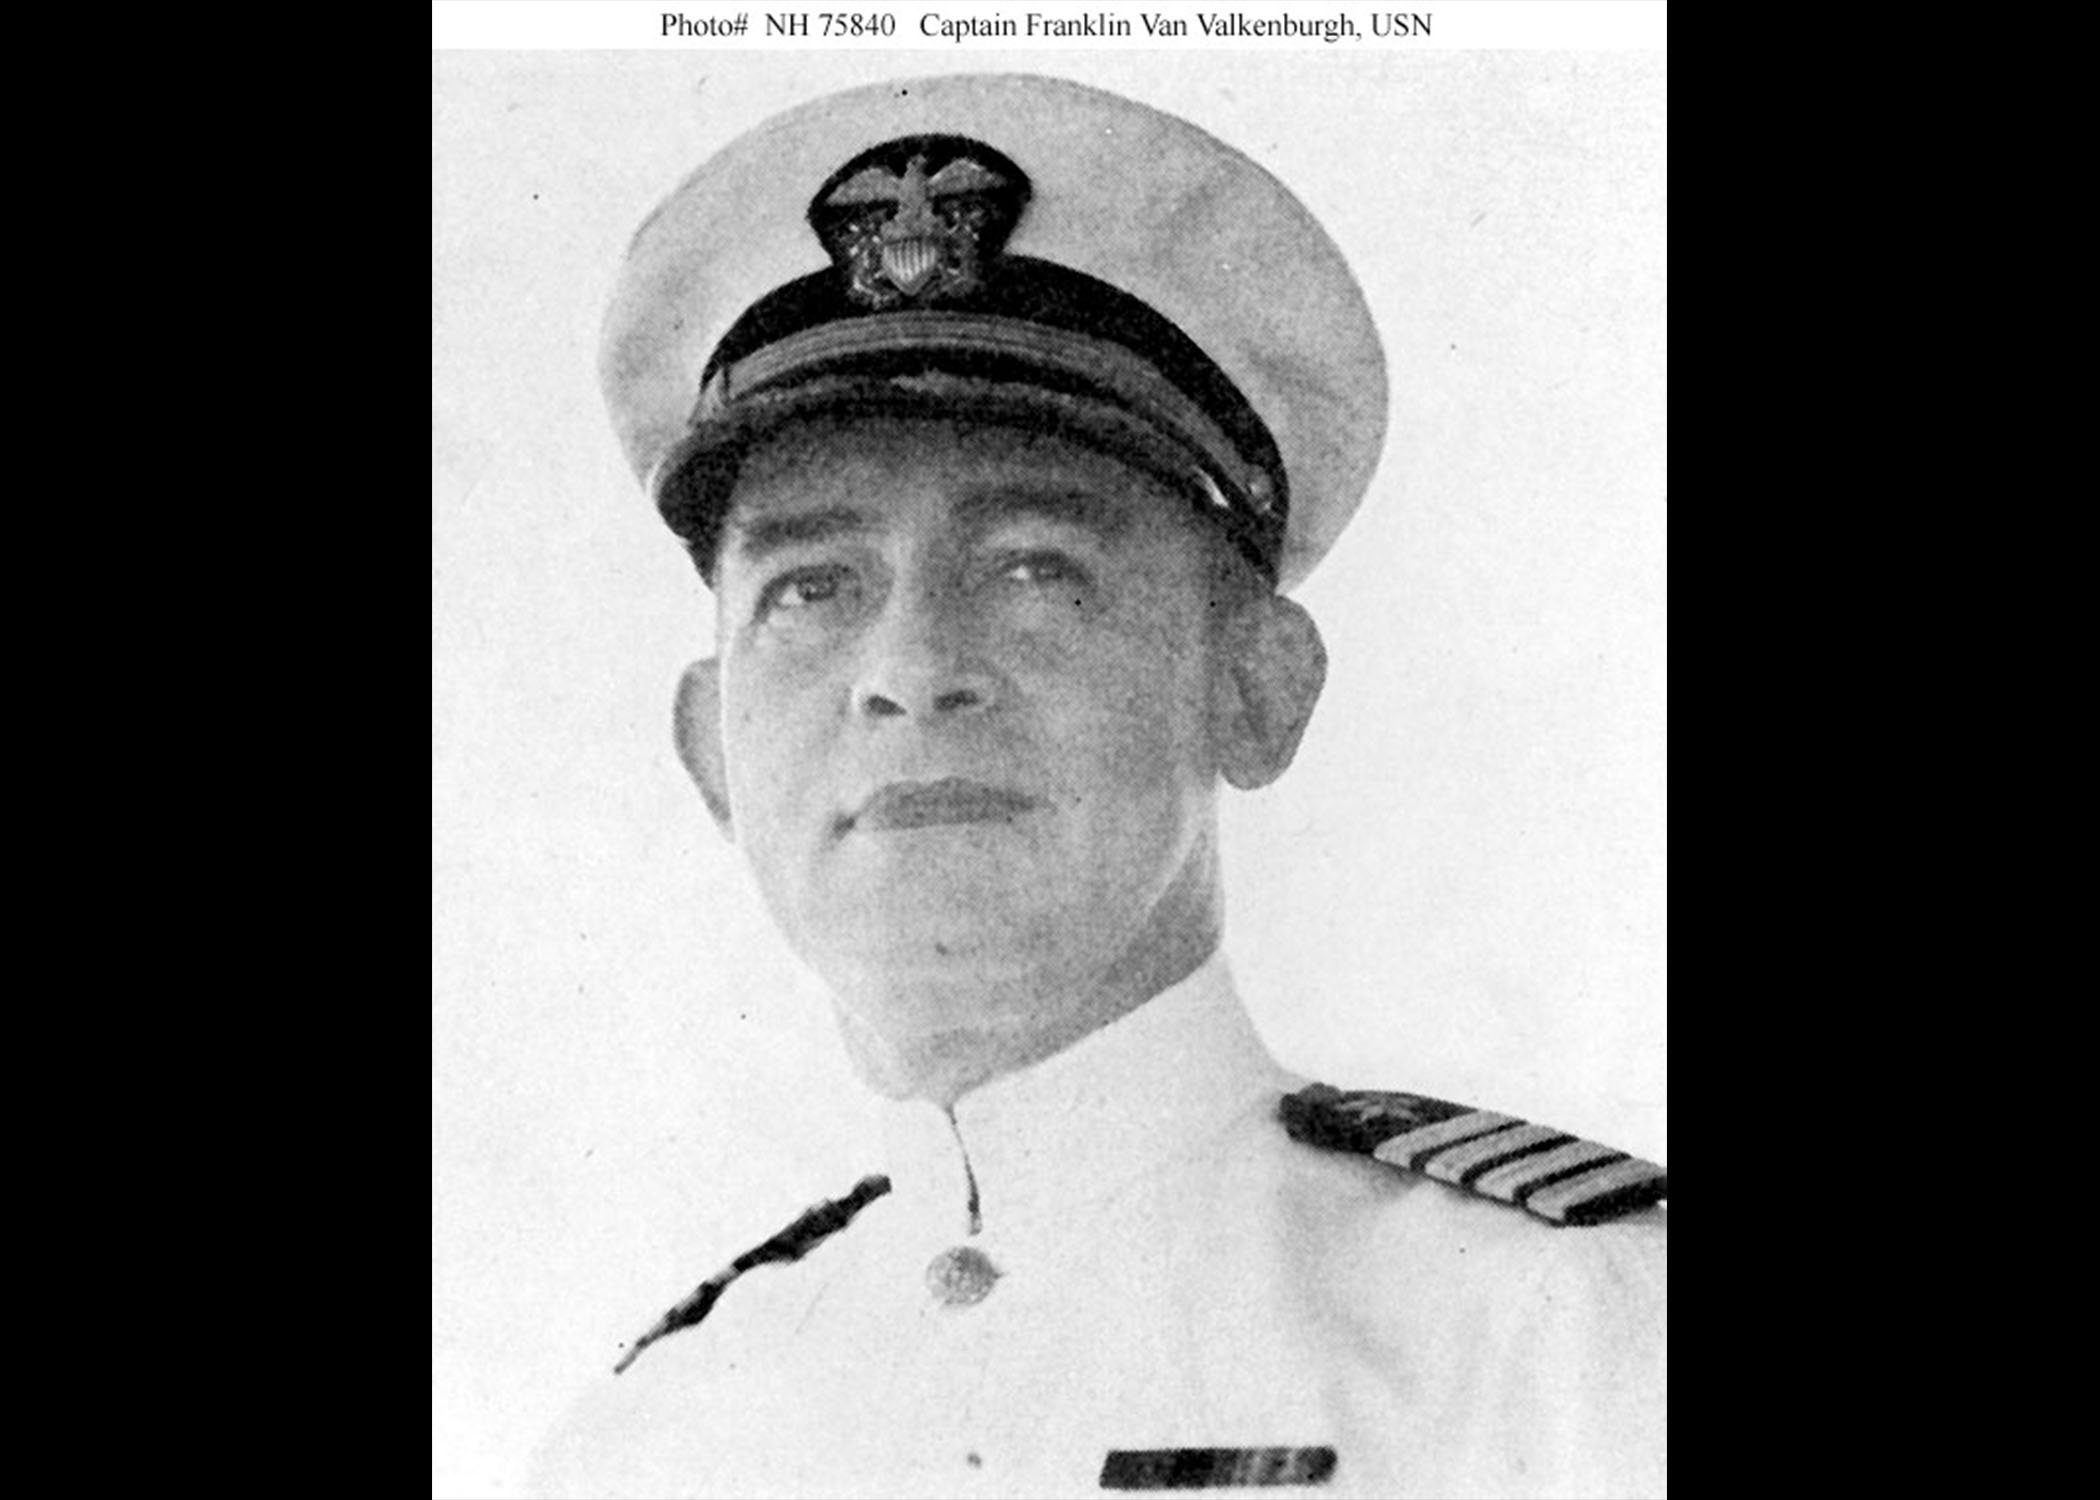 Capt. Franklin Van Valkenburgh